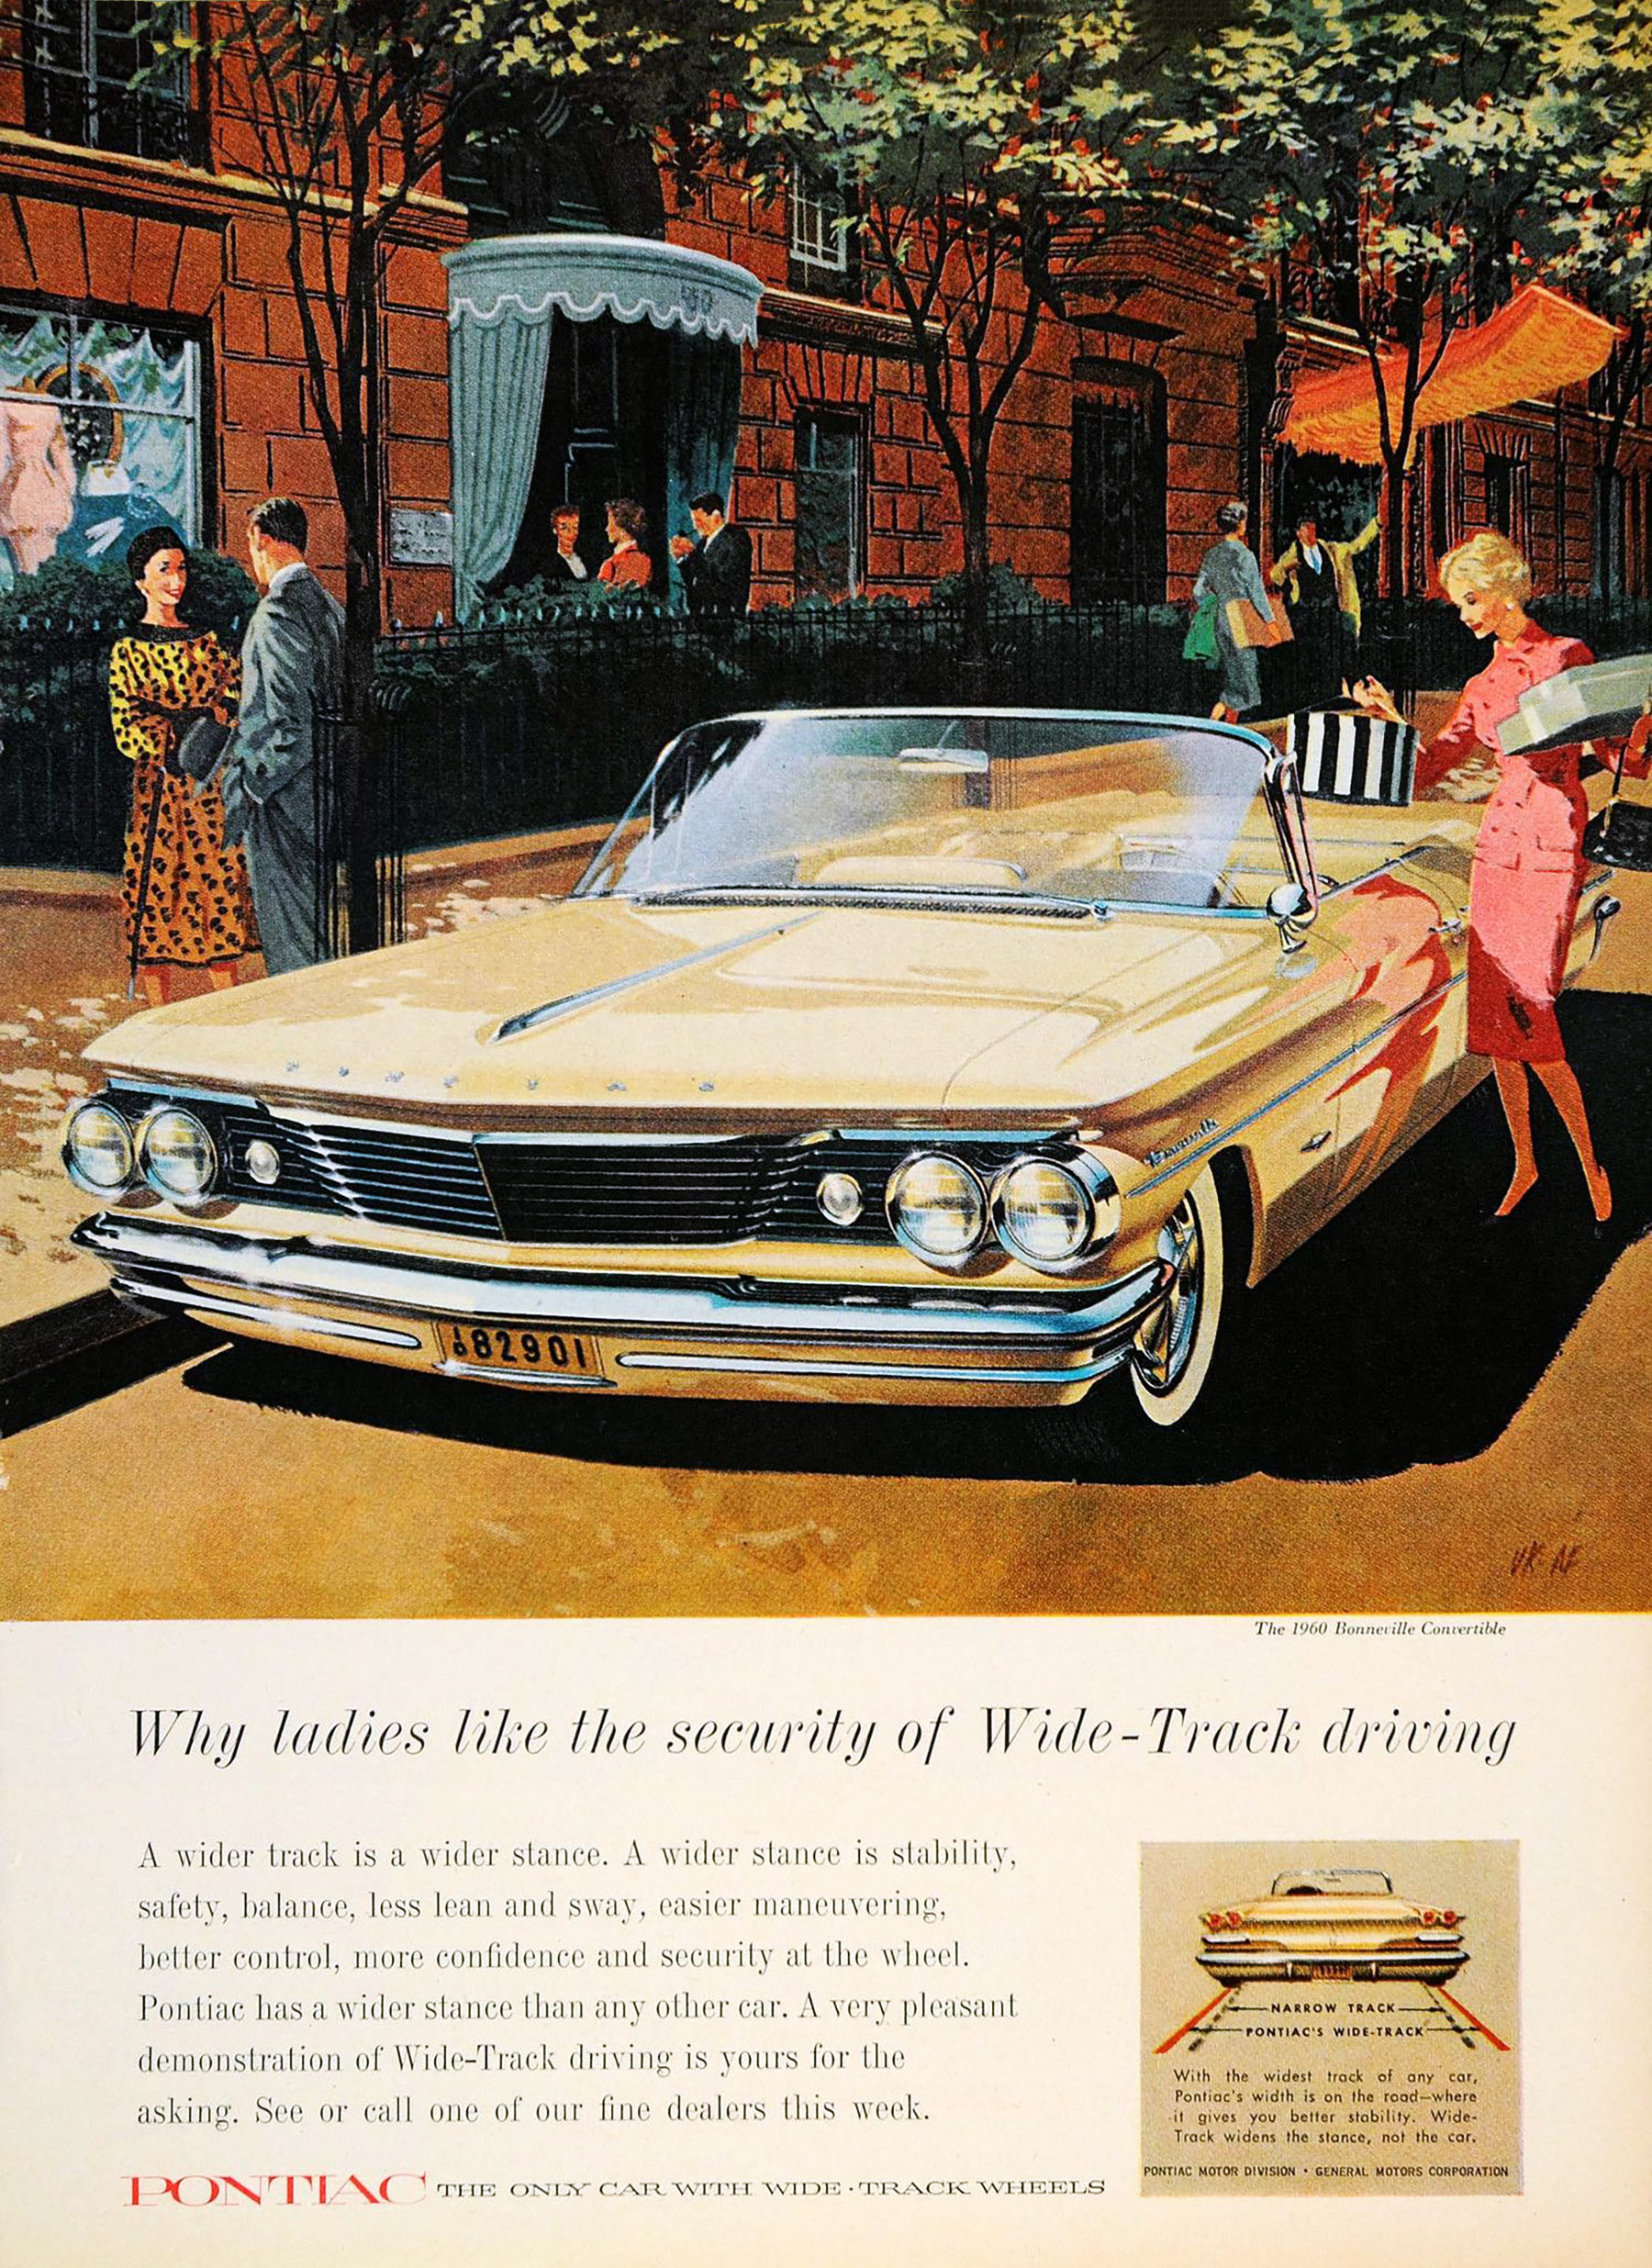 1960 Pontiac, Art Fitzpatrick